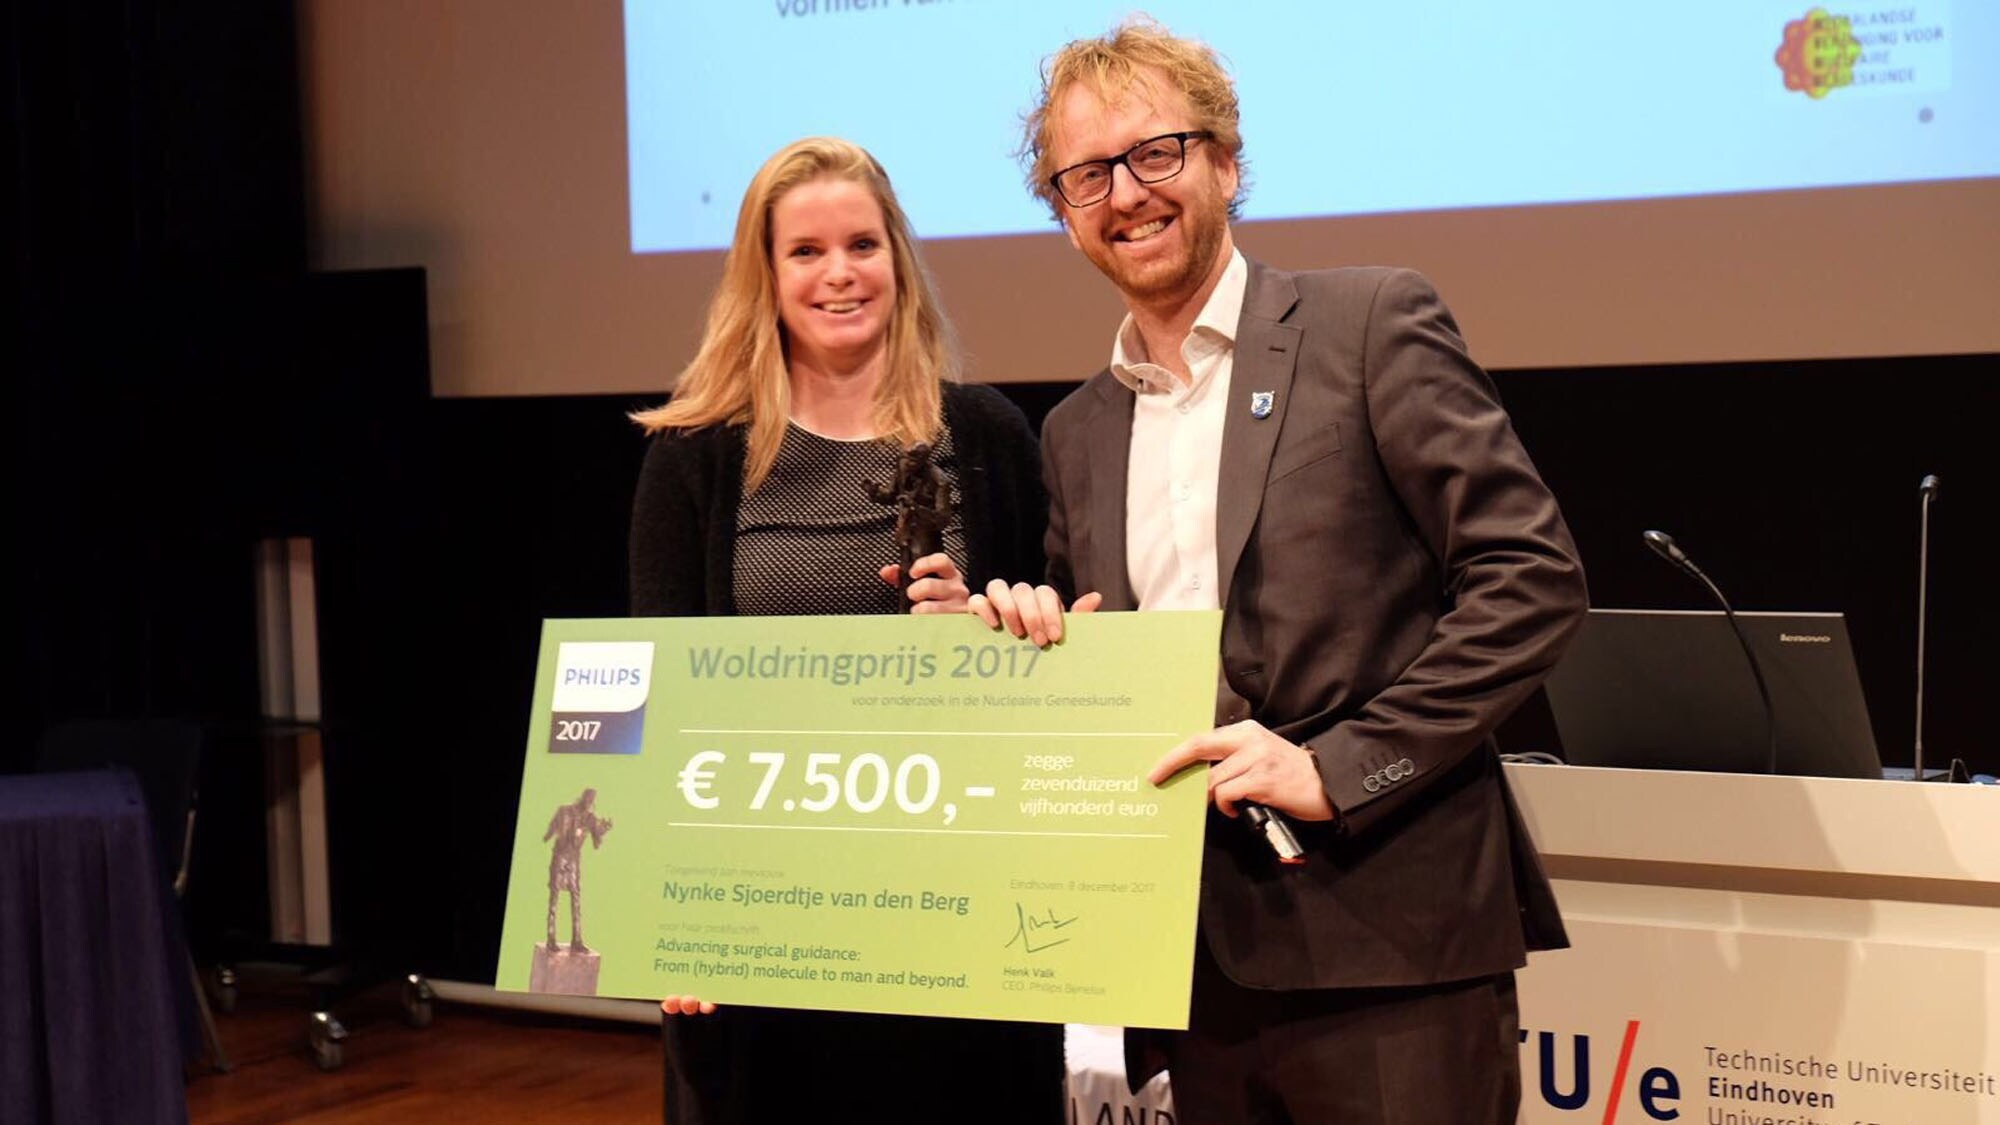 Philips Woldringprijs voor Nynke van den Berg